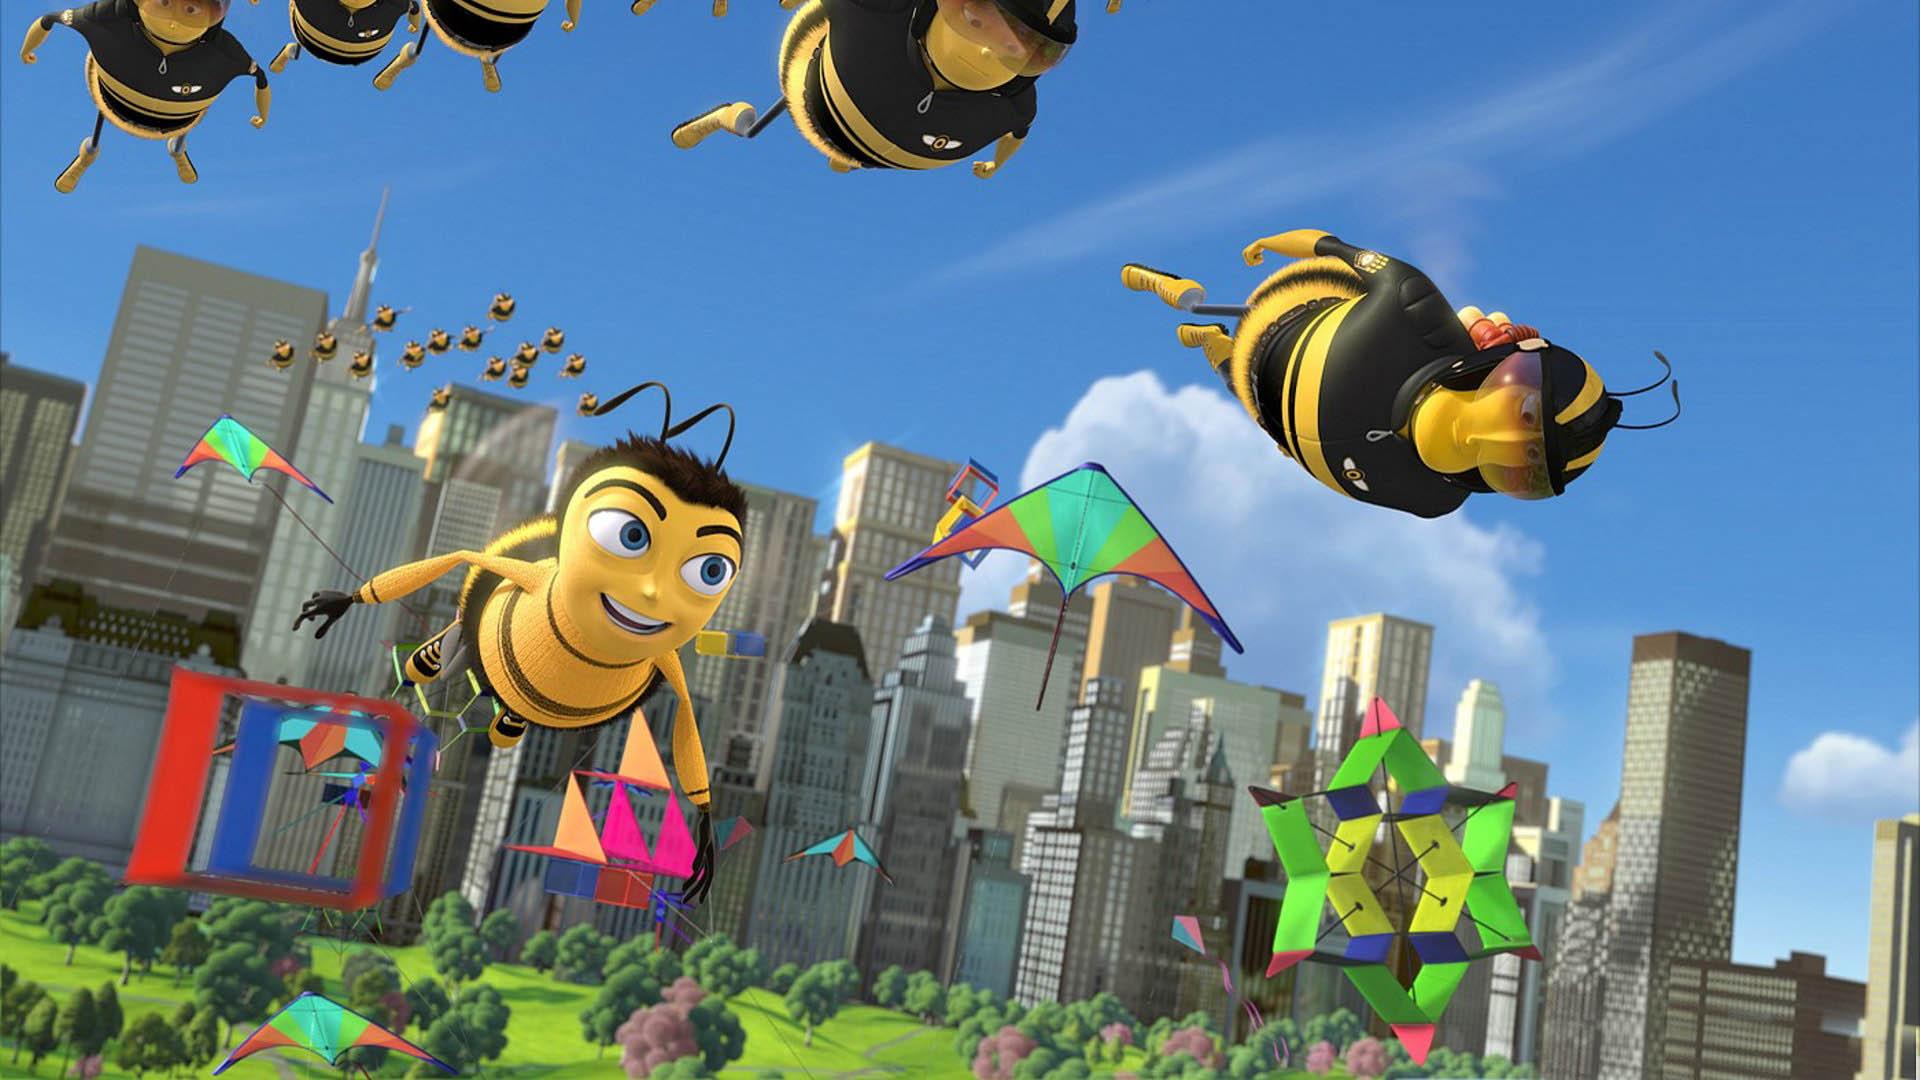 download wallpaper: Bee Movie wallpaper